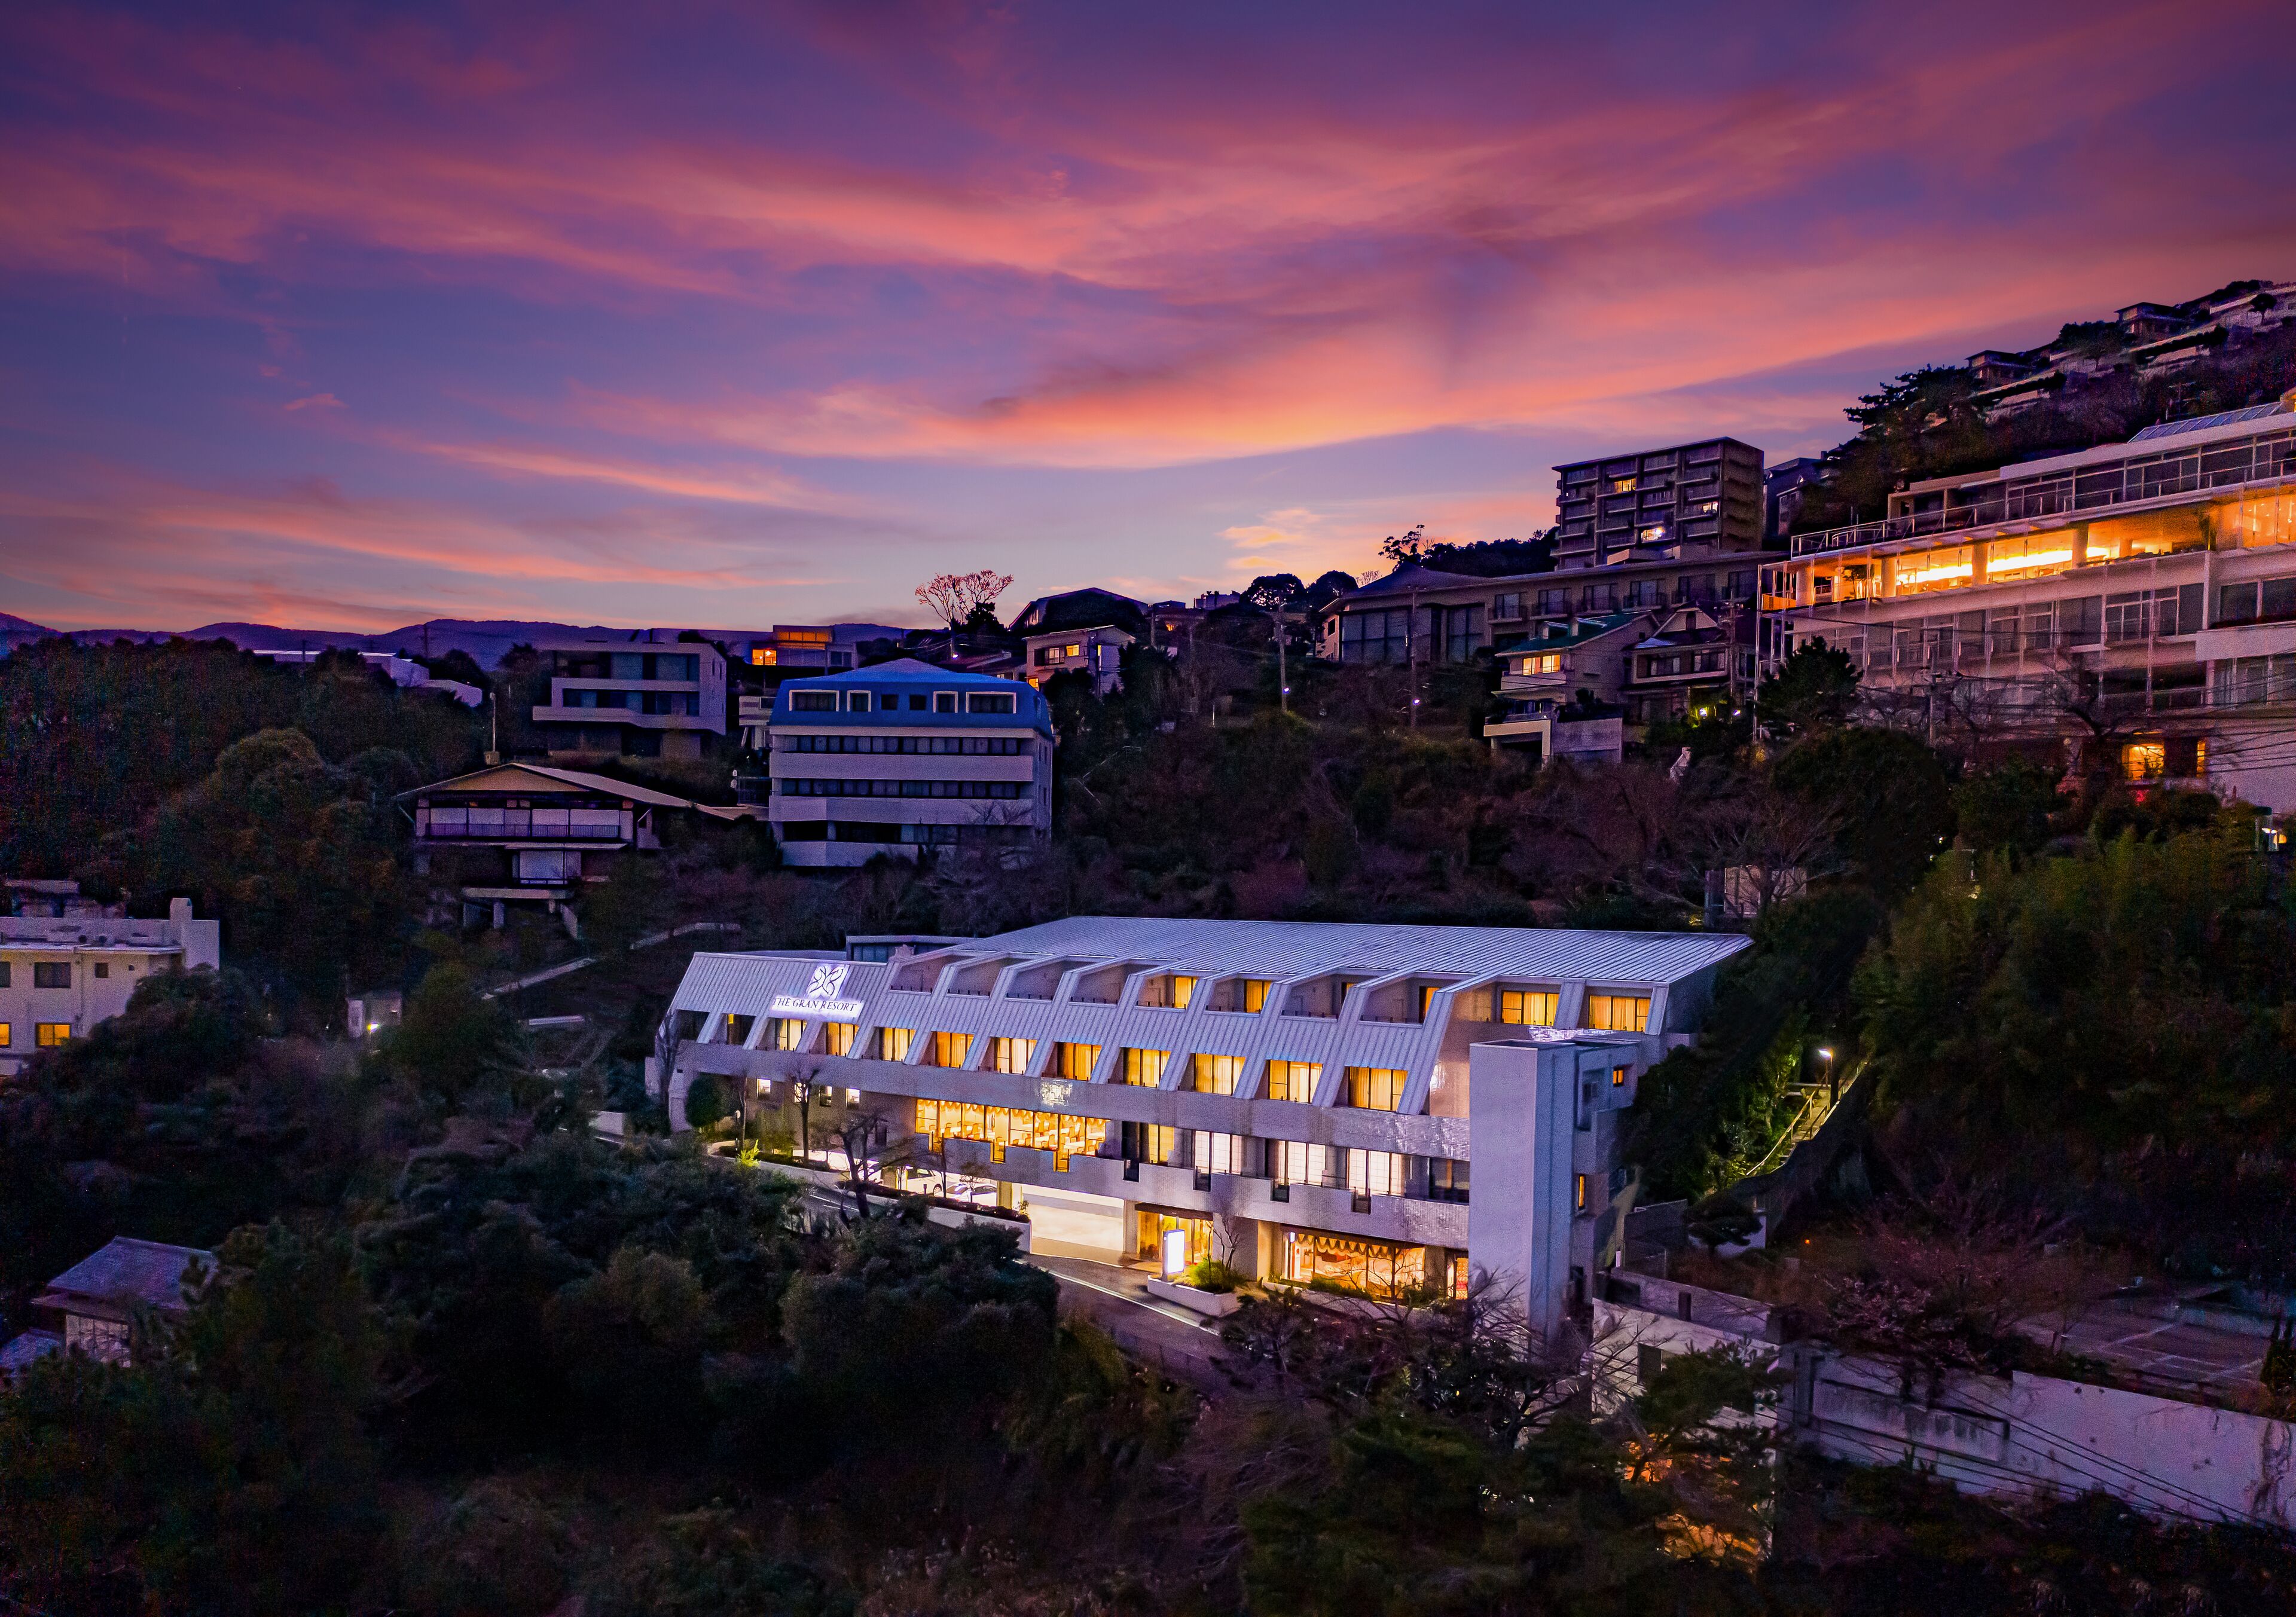 The Gran Resort Elegante Atami image 1